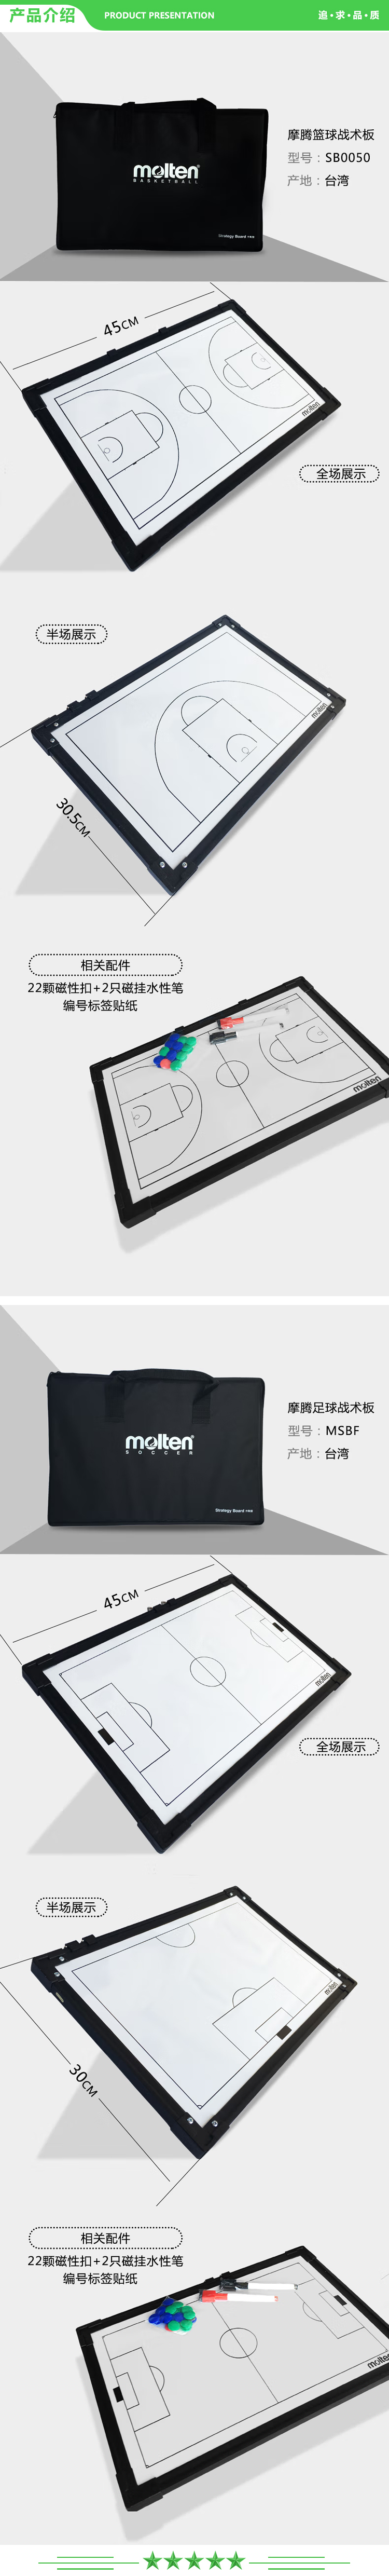 摩腾 molten MSBF 足球战术板 篮球战术板 足球作战板 排球教练装备.jpg